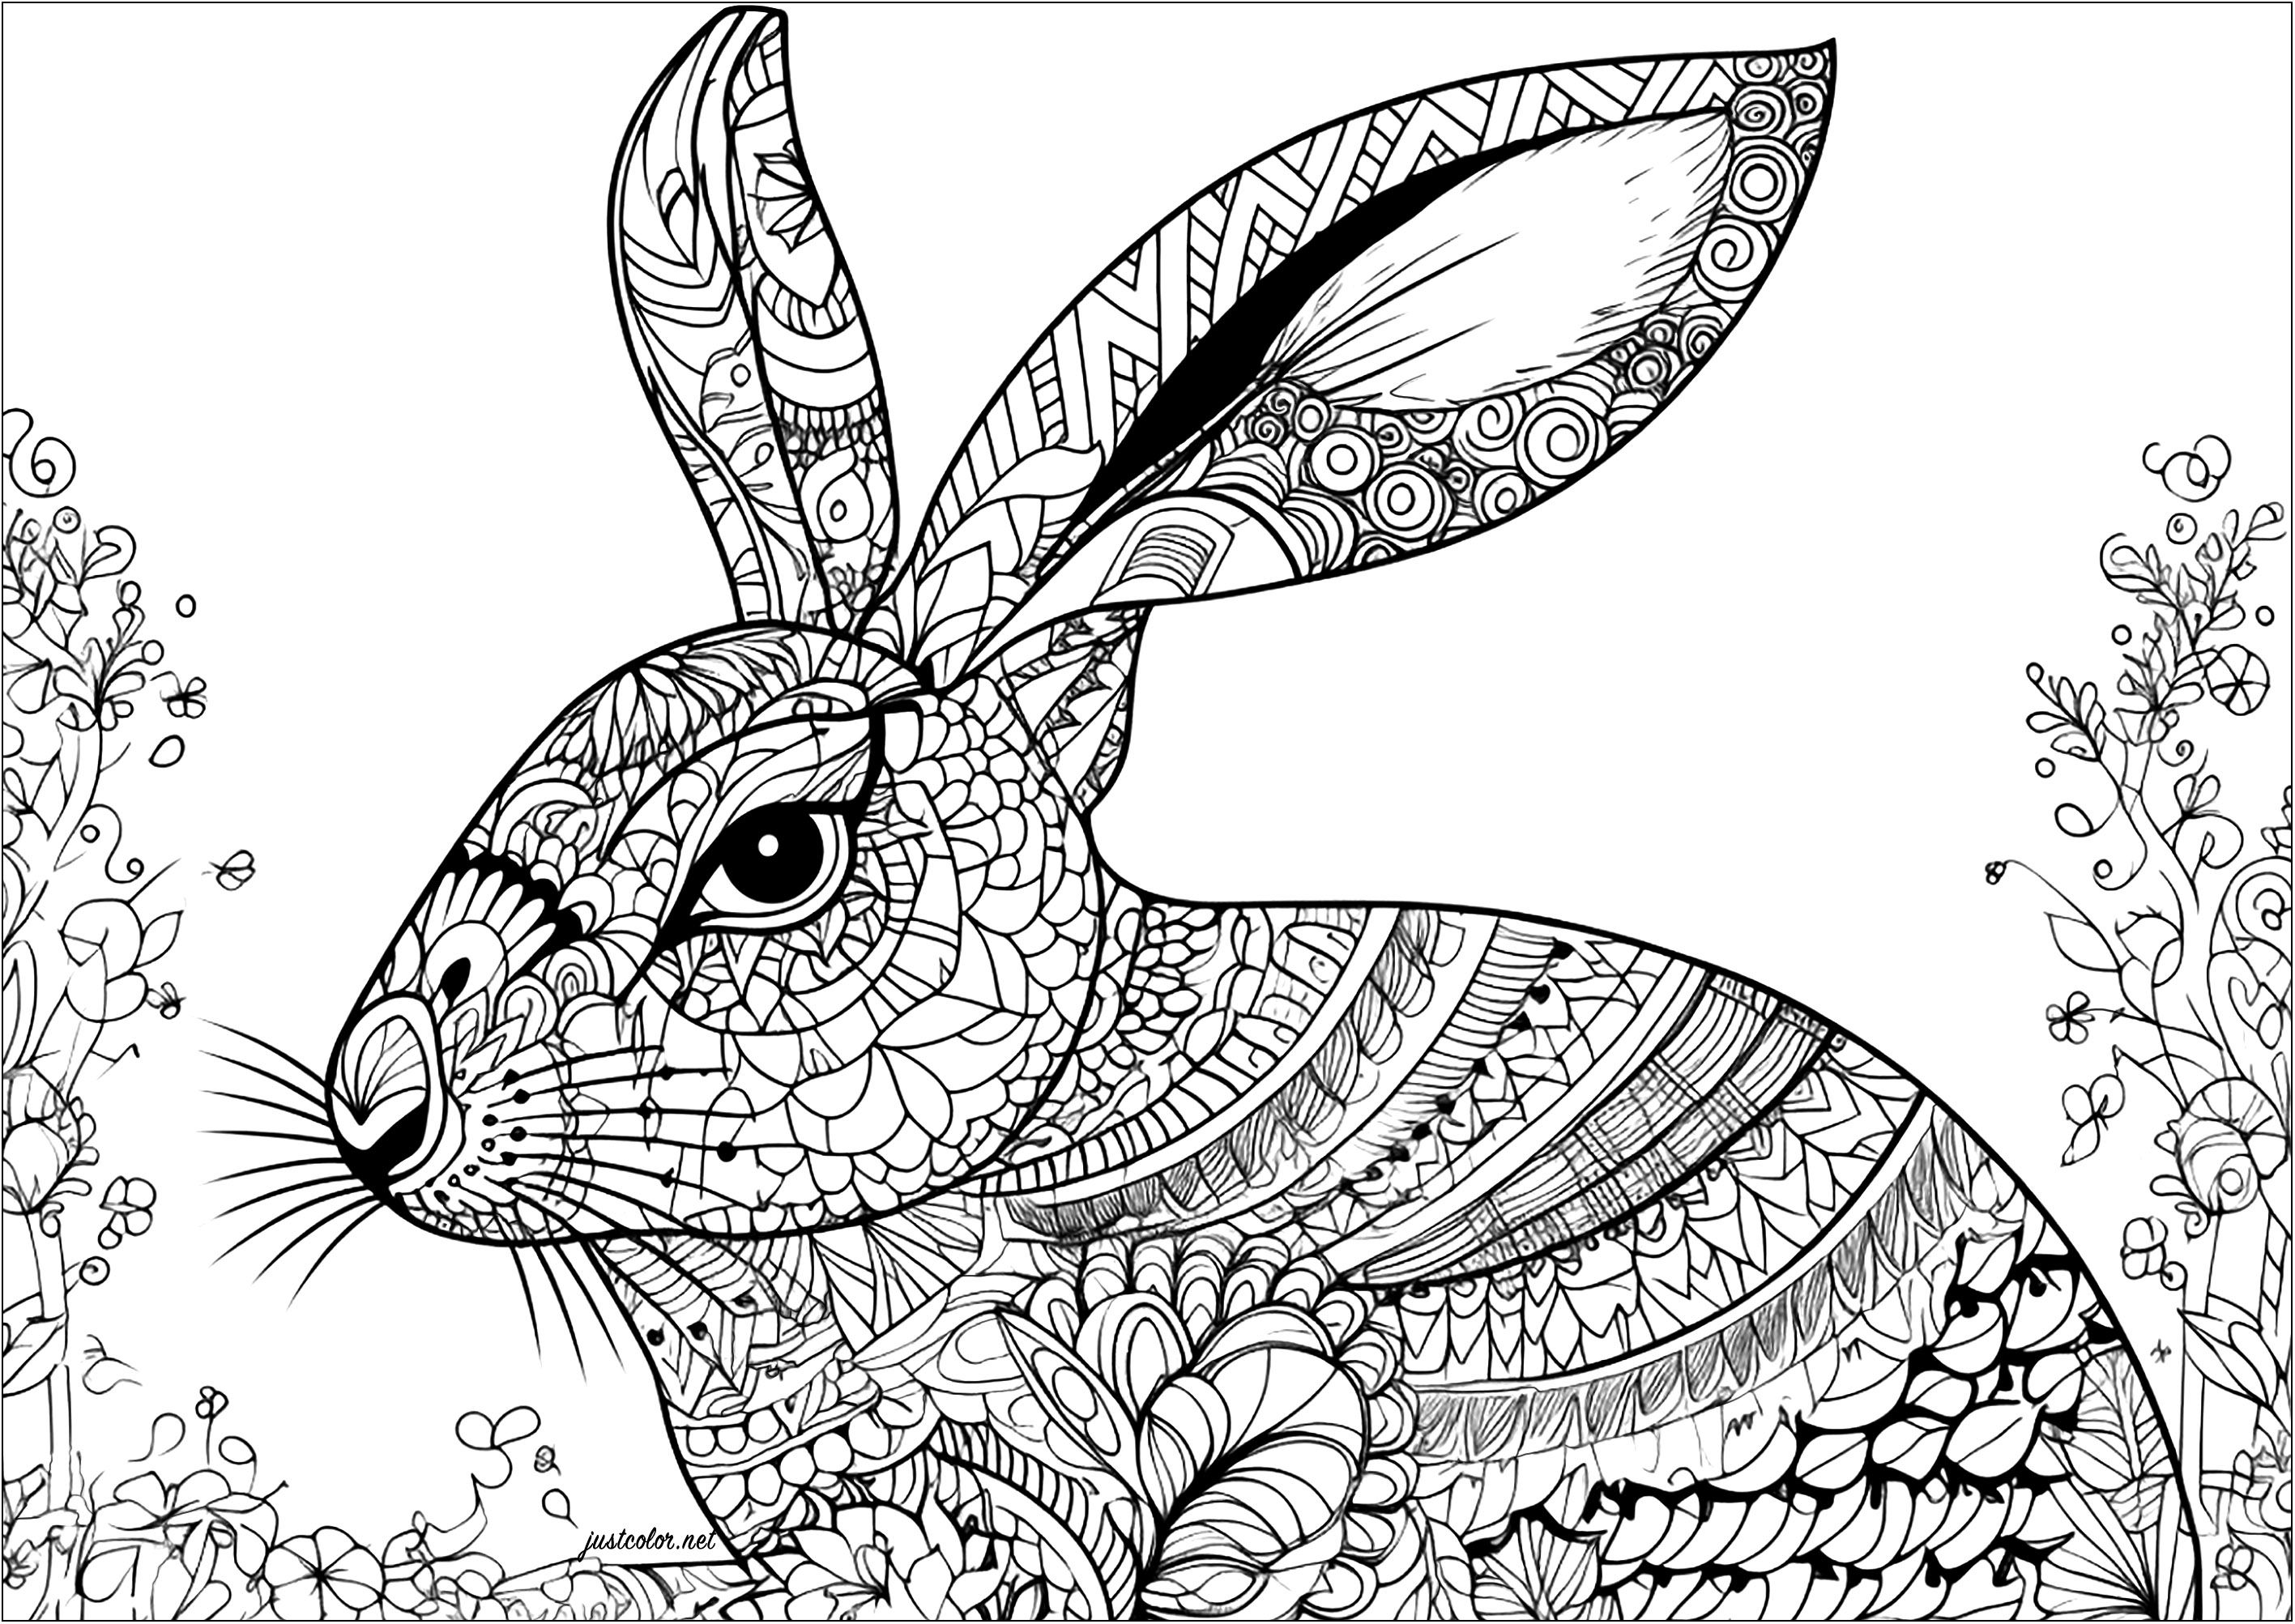 Padrões de coelho e complexos. Um belo livro para colorir de coelhos com desenhos intrincados e diversificados. Este livro para colorir vai demorar muito tempo a ser terminado, mas vai certamente proporcionar-lhe uma óptima paz de espírito.